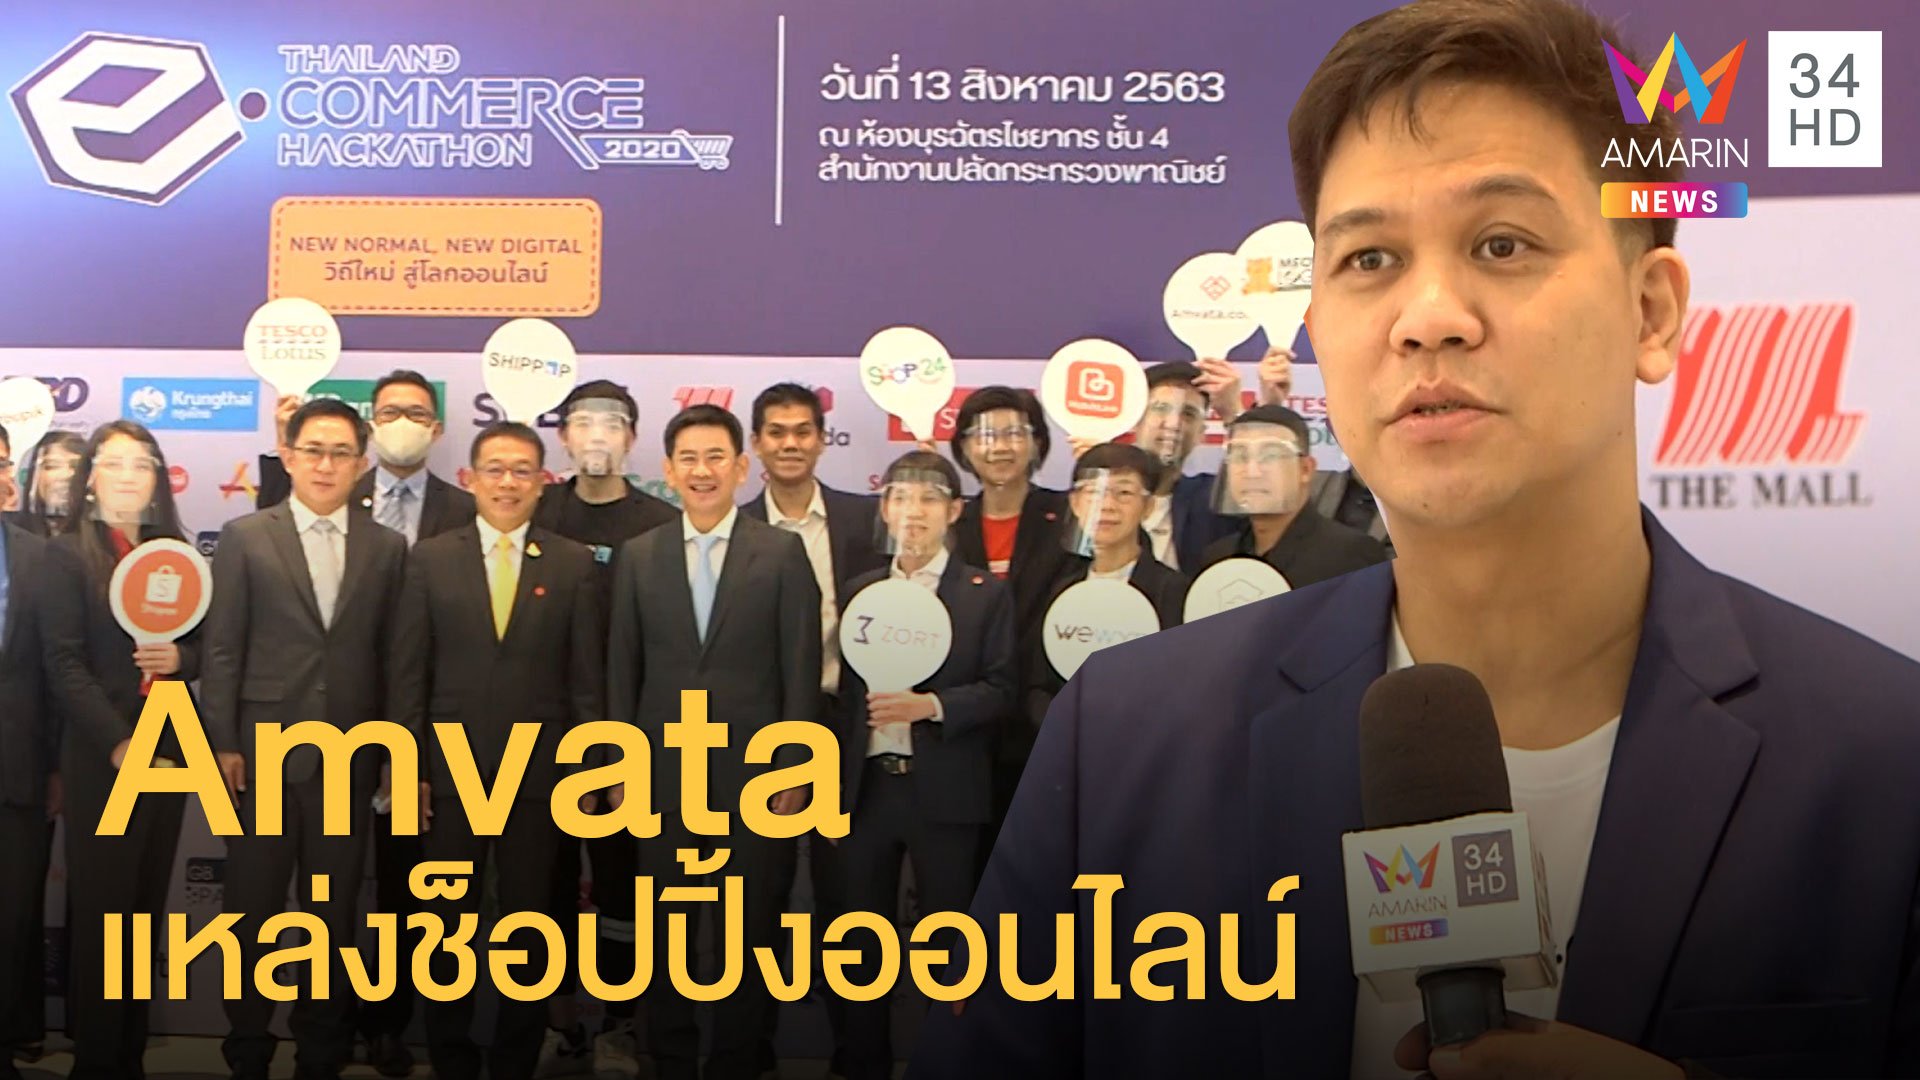 เปิดตัวโครงการ Thailand e-Commerce 2020  | ข่าวเที่ยงอมรินทร์ | 14 ส.ค. 63 | AMARIN TVHD34